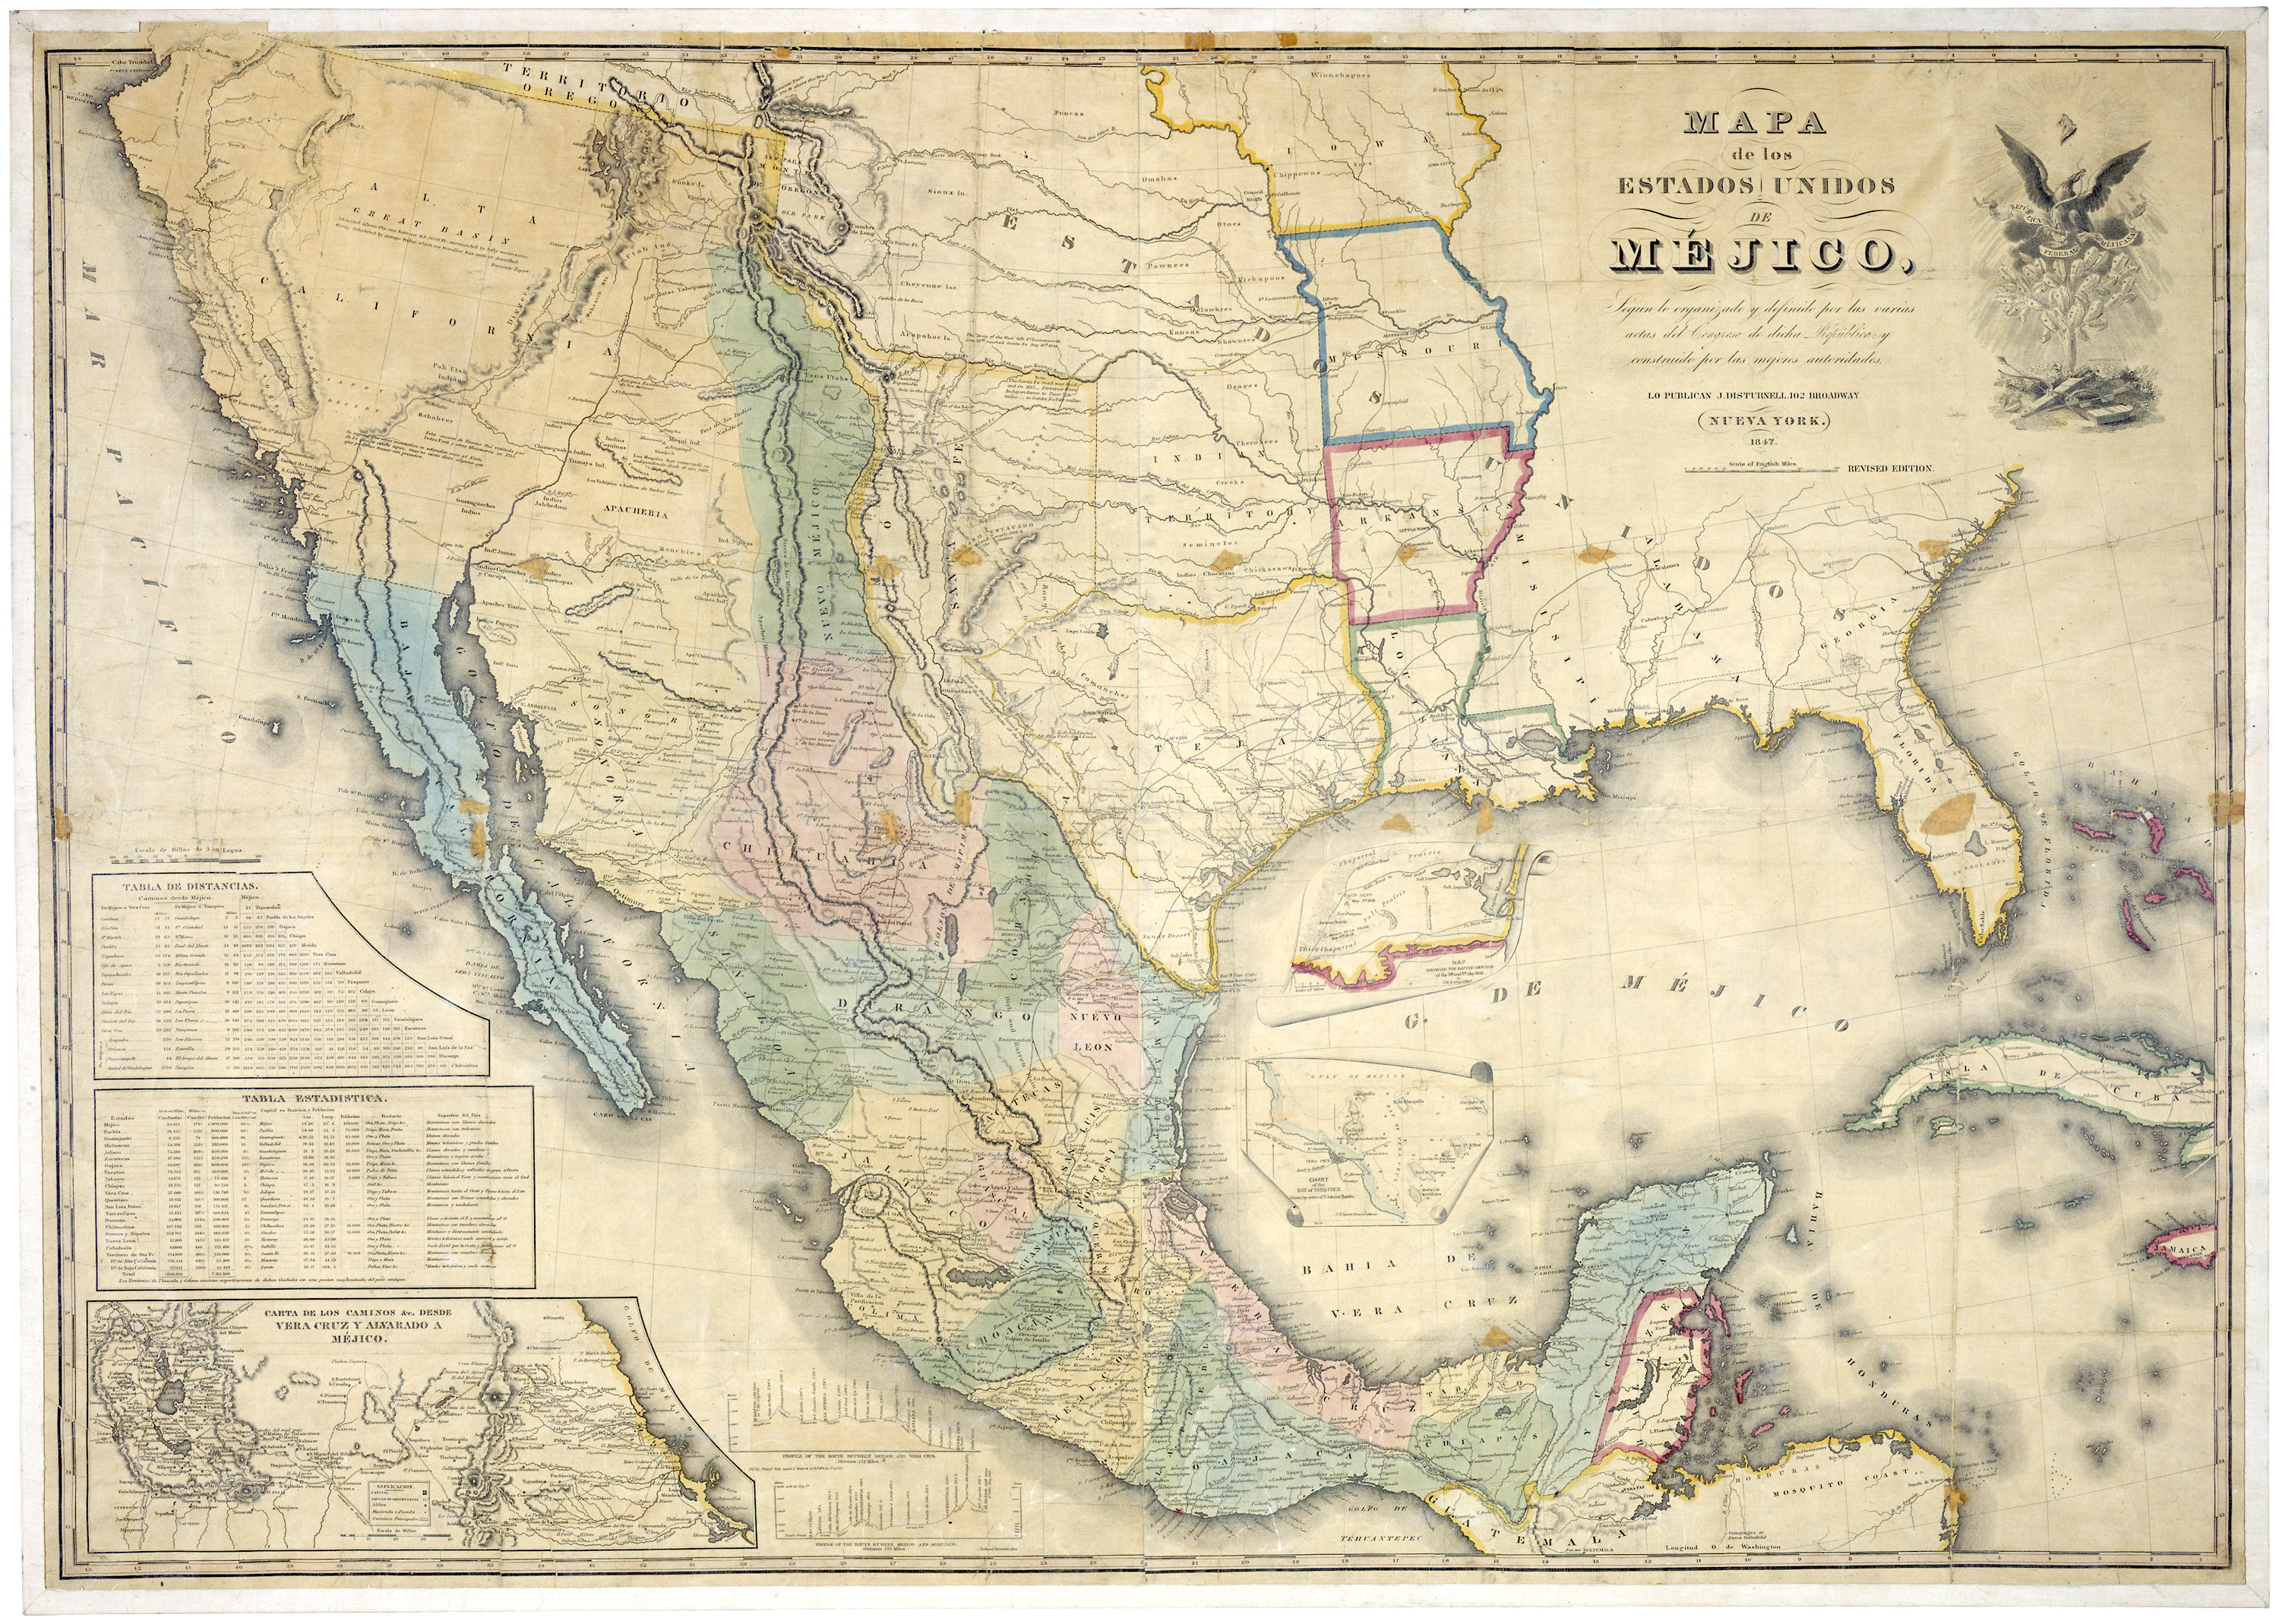 “Mapa de los Estados Unidos de Méjico” A map of Mexico prior to the Treaty of Guadalupe Hidalgo